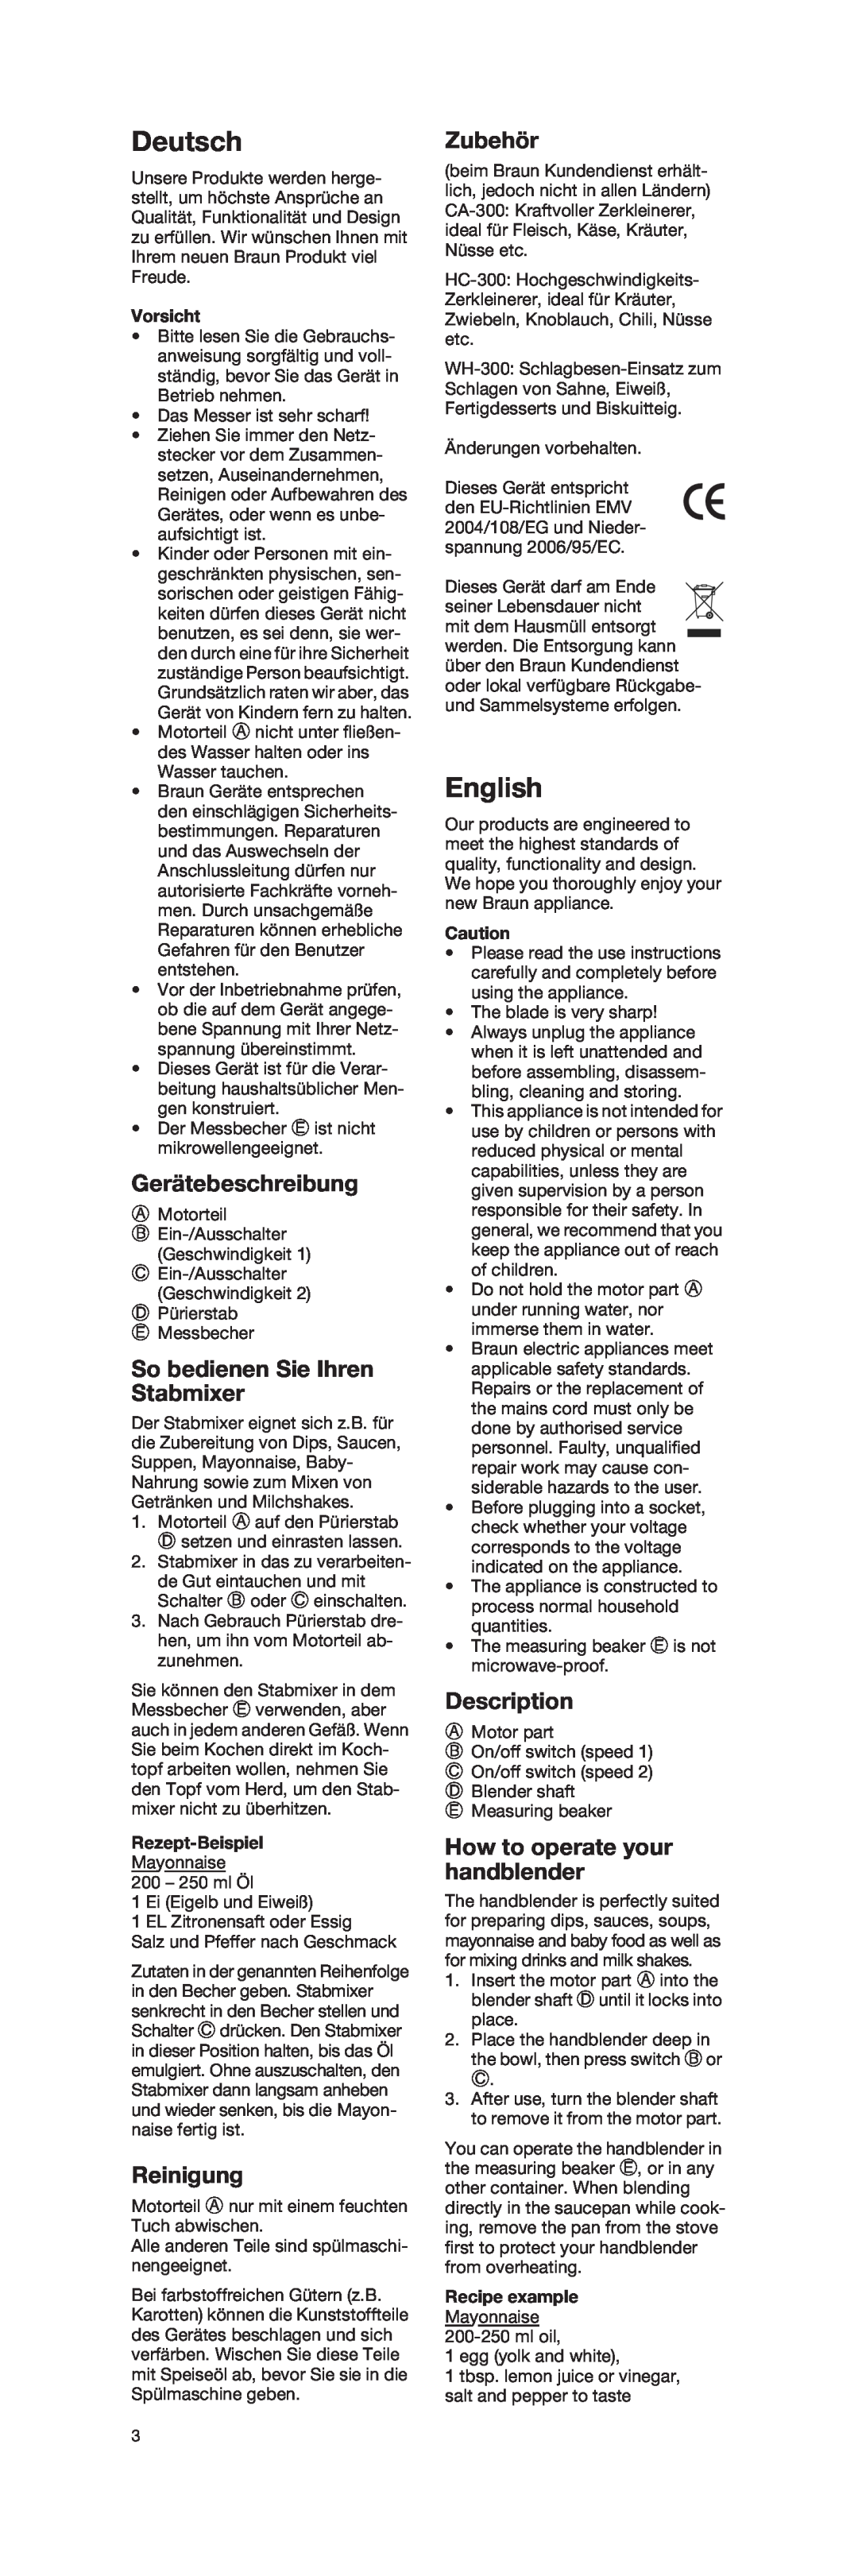 Braun 4162 manual Deutsch, English, Gerätebeschreibung, So bedienen Sie Ihren Stabmixer, Reinigung, Zubehör, Description 